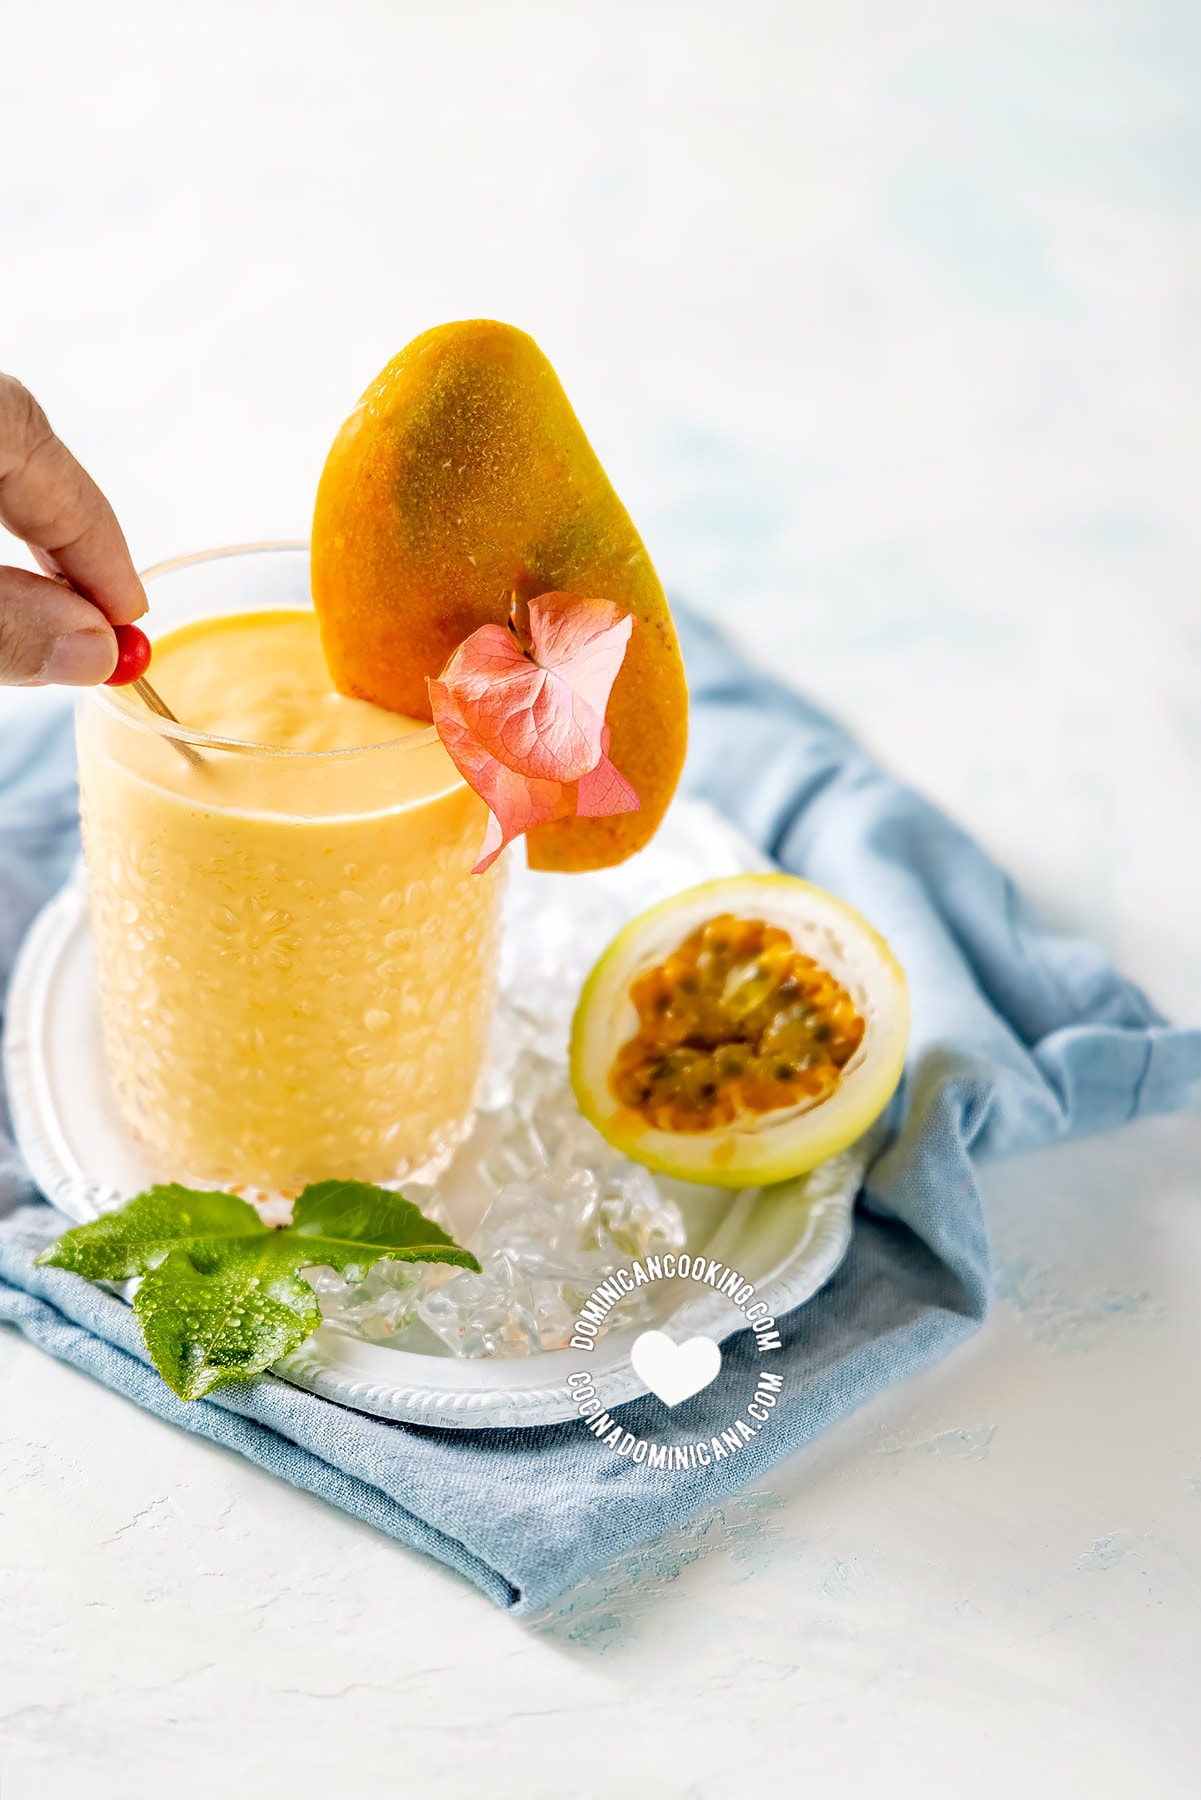 Batido de mango (passionfruit and mango smoothie)